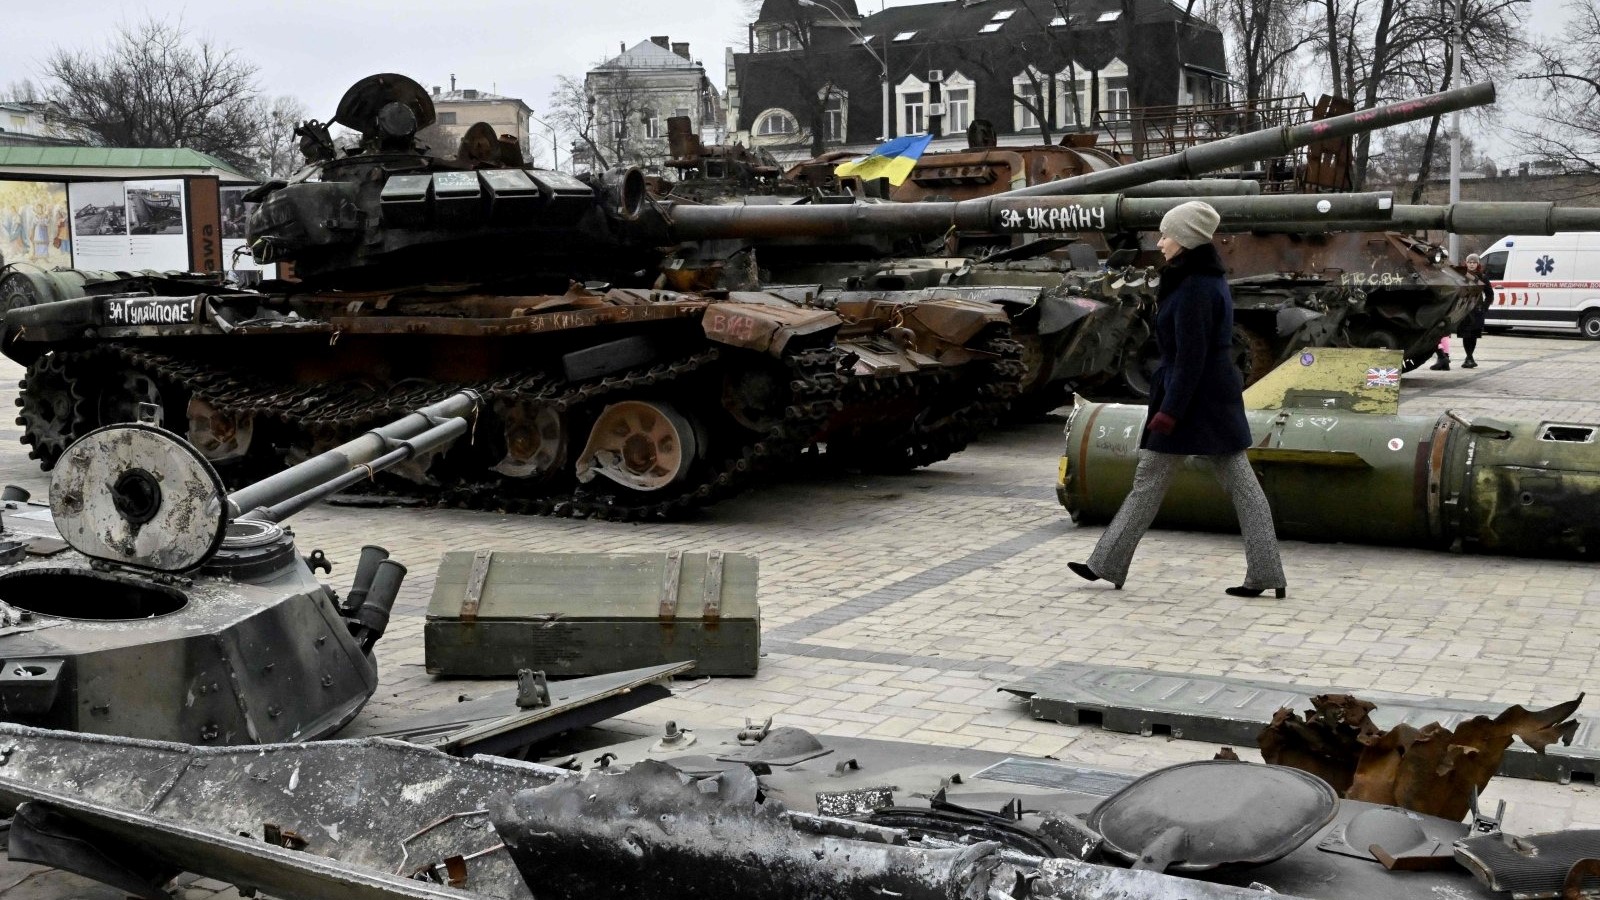 امرأة تمشي أمام مركبات عسكرية روسية مدمرة تظهر في معرض في الهواء الطلق في وسط كييف بأوكرانيا، في 24 فبراير 2023.